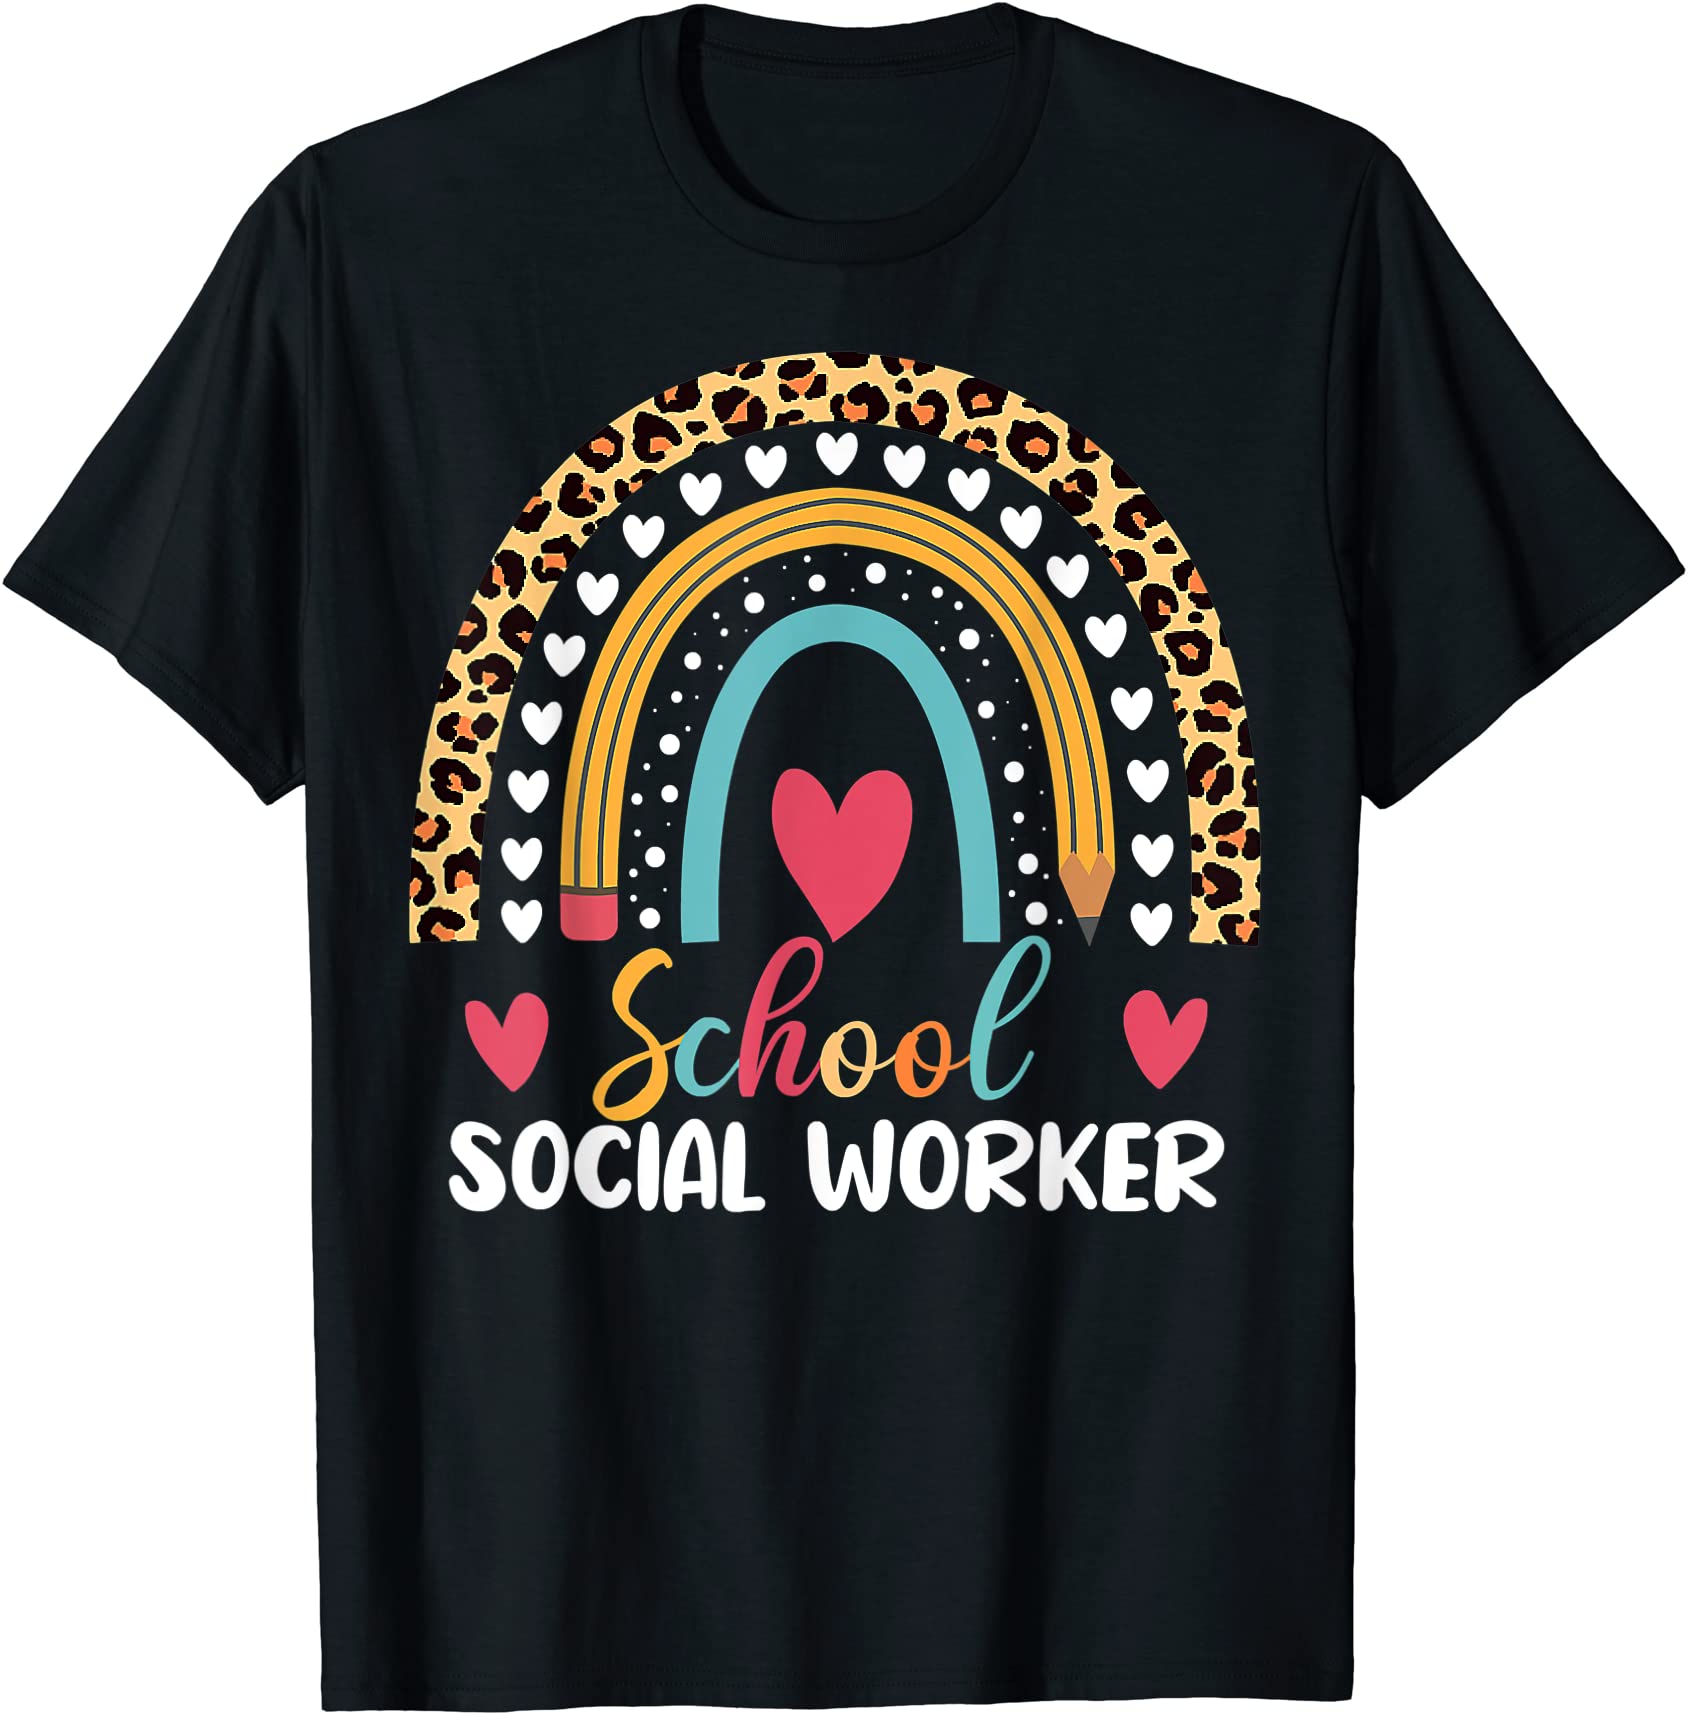 school social worker boho rainbow leopard pattern t shirt men - Buy t ...